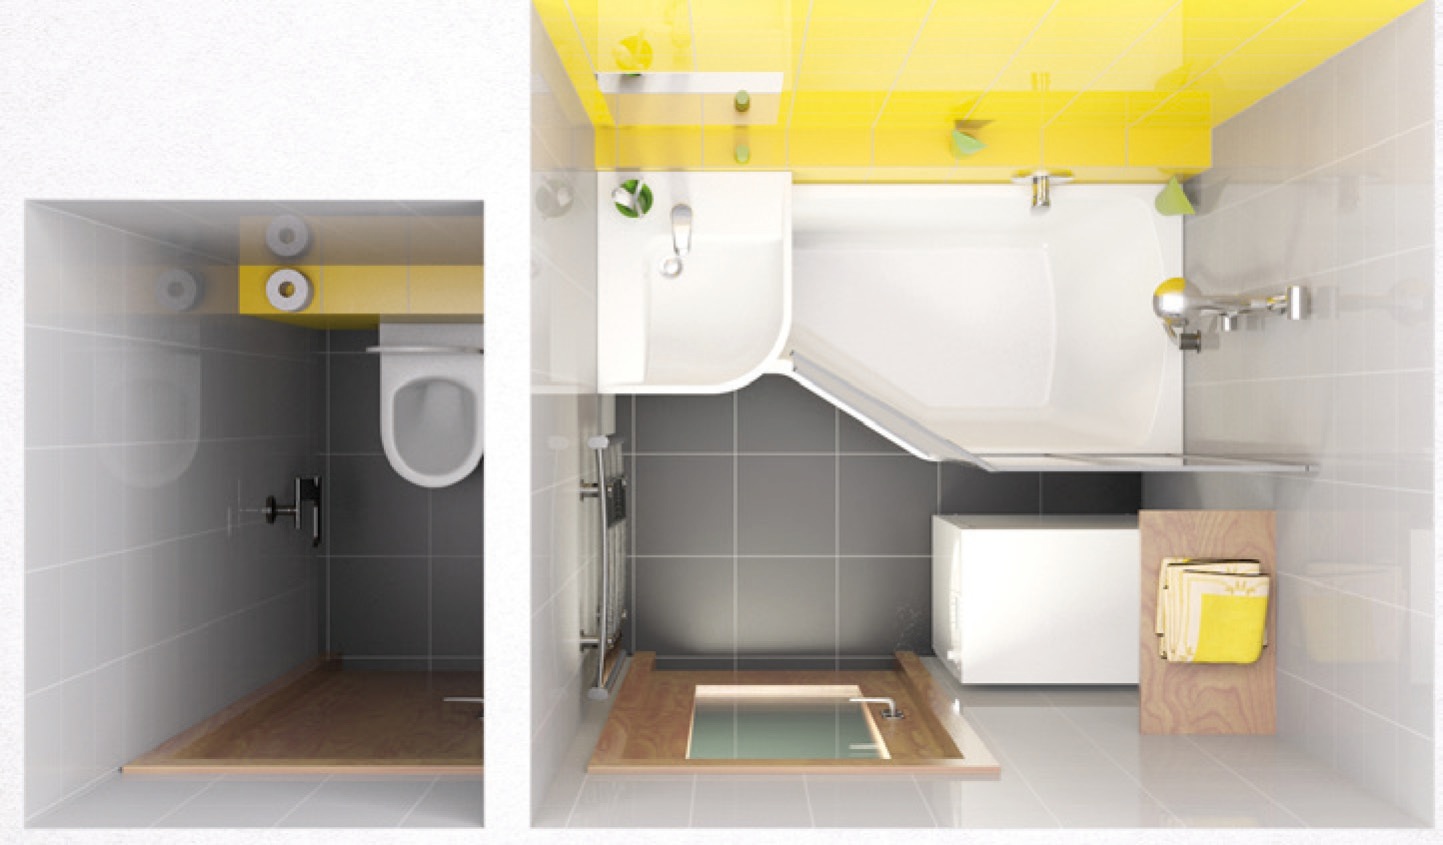 BeHappy koncepciónk fürdőszoba bútorai nem csak praktikusak, de méretük miatt még a mosógép is elférhet a fürdőszobában!